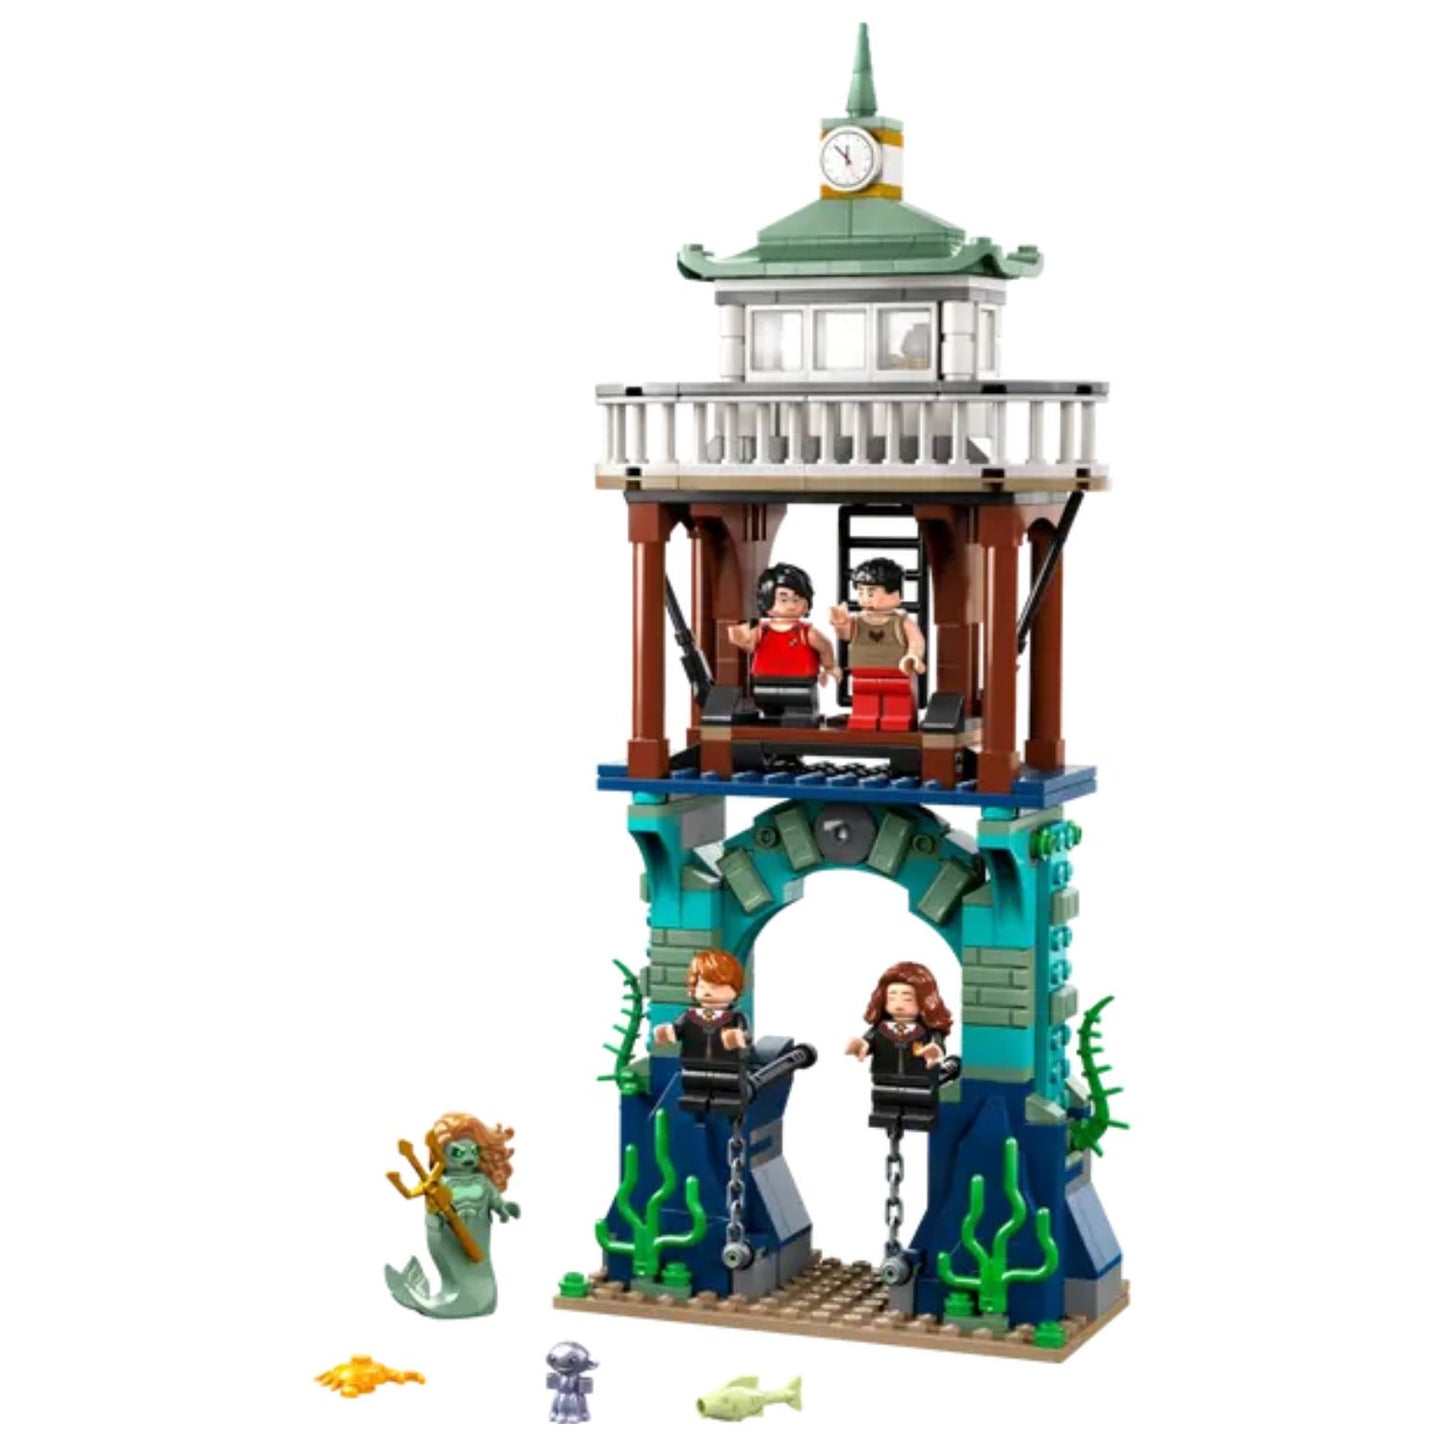 LEGO - Harry Potter Torneo dei Tremaghi: il Lago Nero 76420